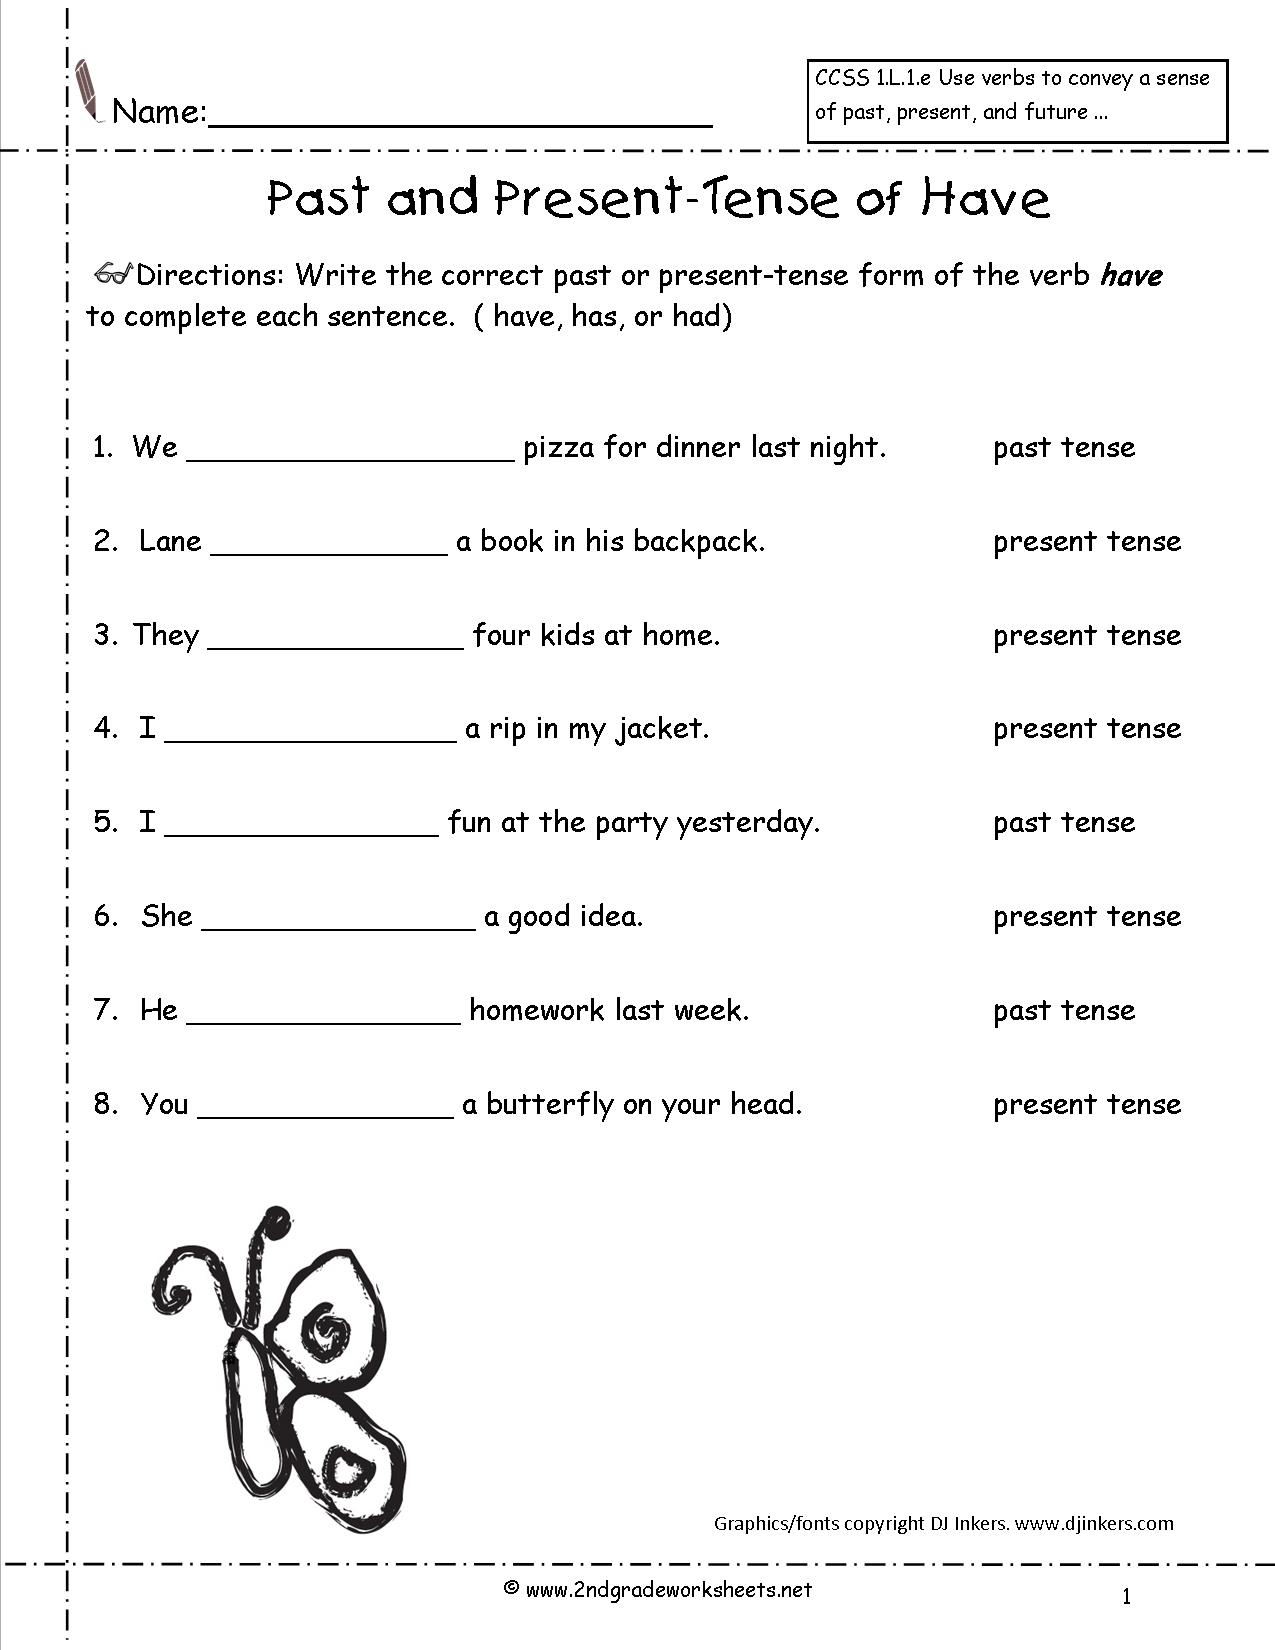 past-present-future-tense-verbs-4th-grade-teaching-past-present-and-future-verbs-speech-time